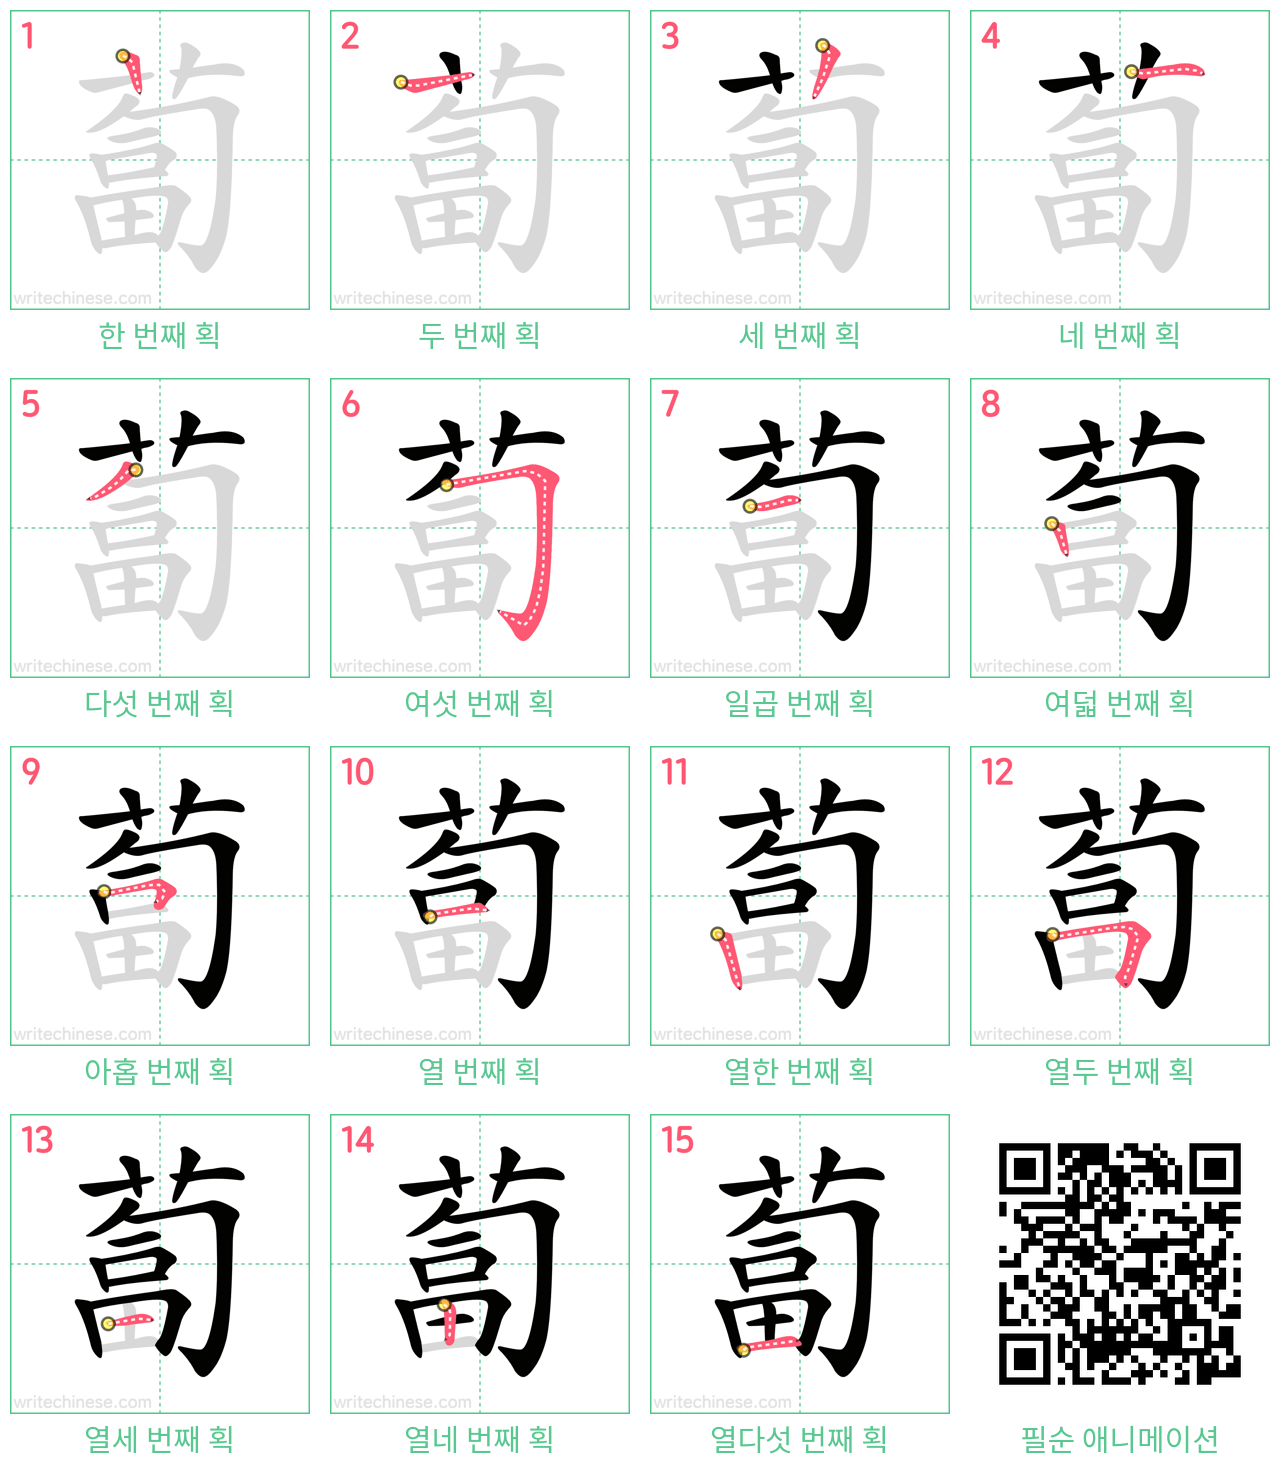 蔔 step-by-step stroke order diagrams